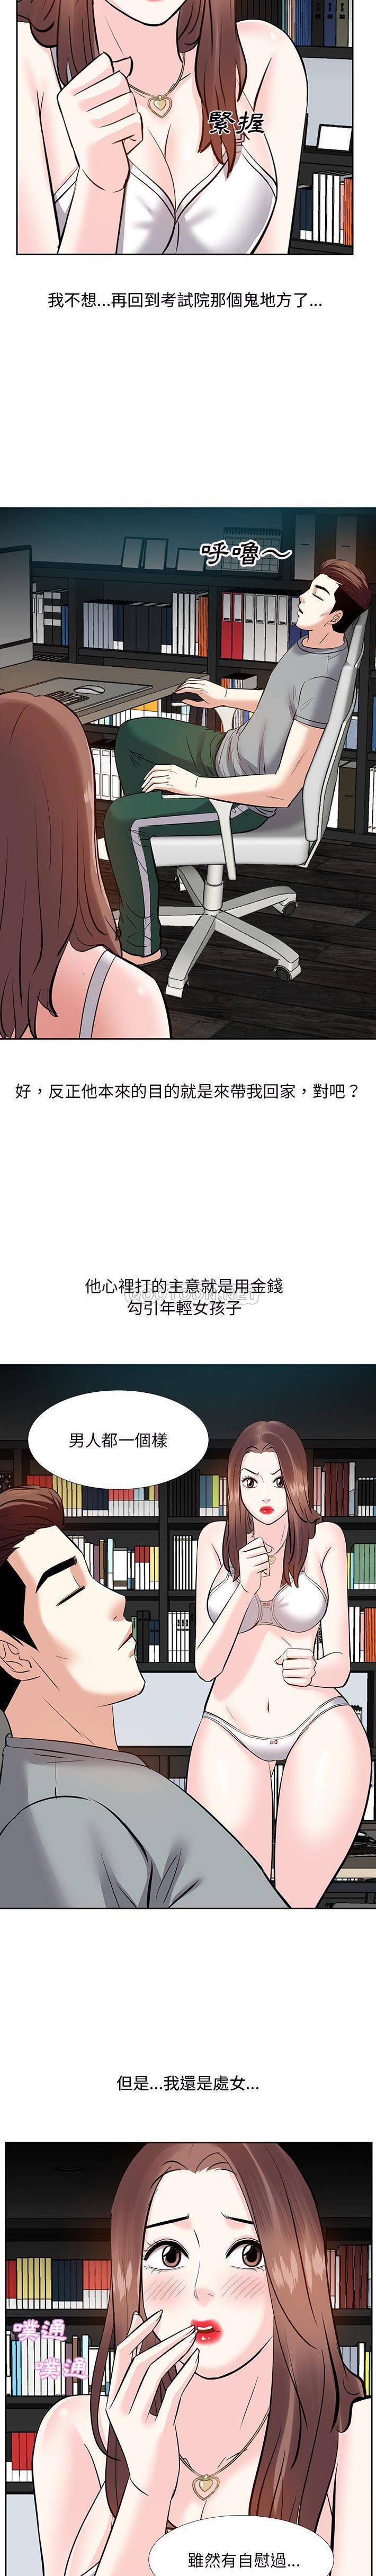 韩国污漫画 甜心幹爹 第9话 3